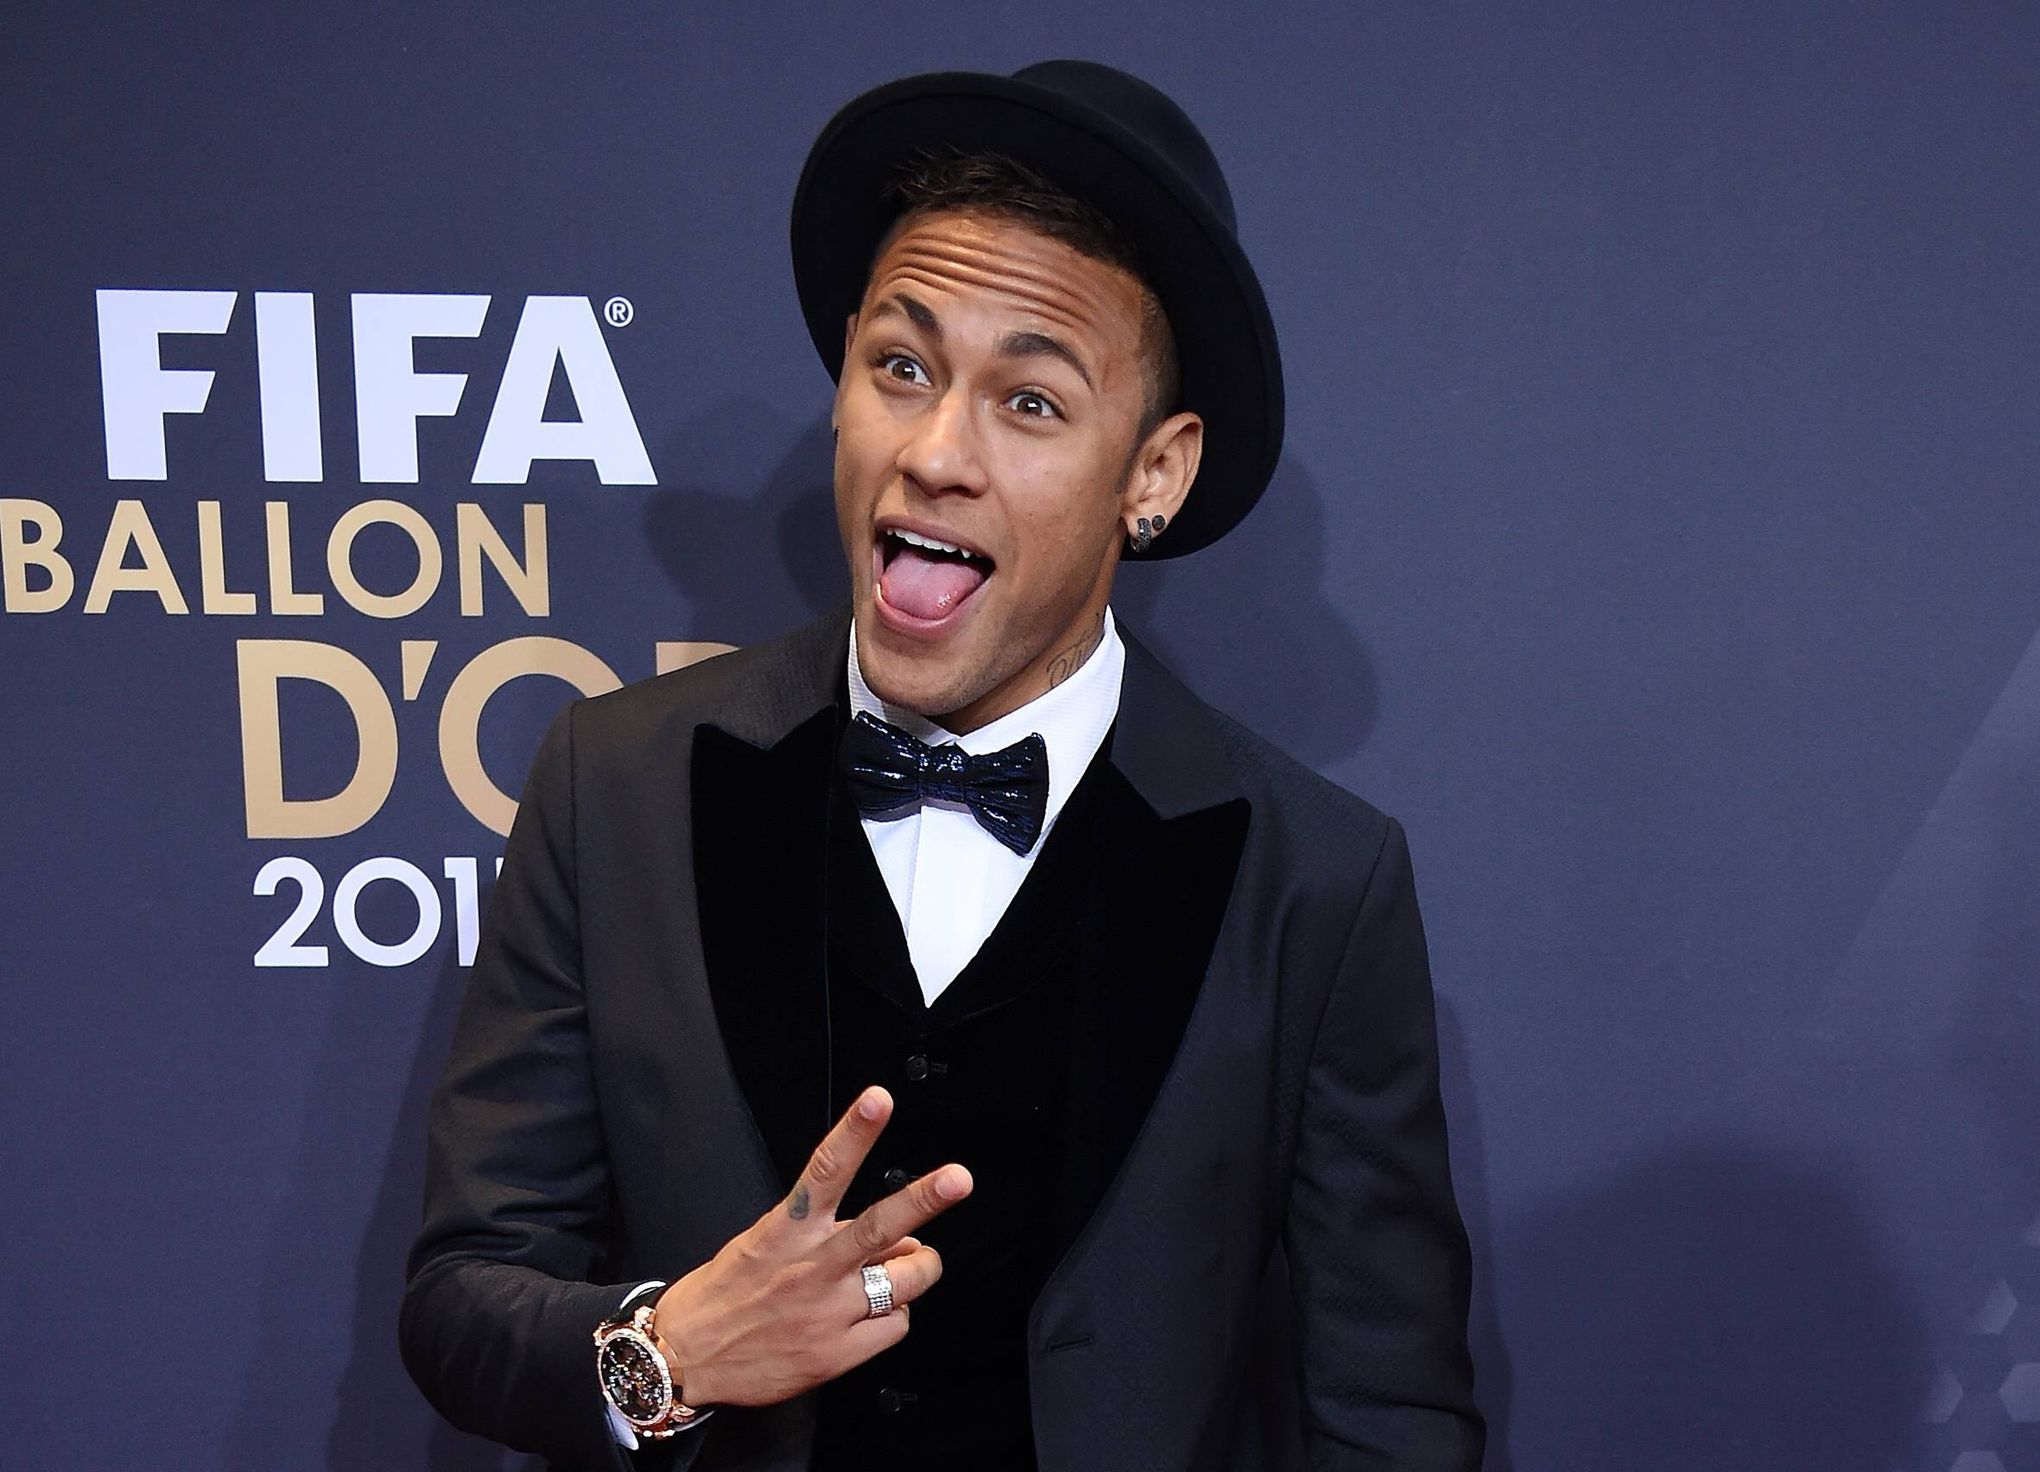 Trois millions d'euros pour Neymar s'il obtient le Ballon d'Or